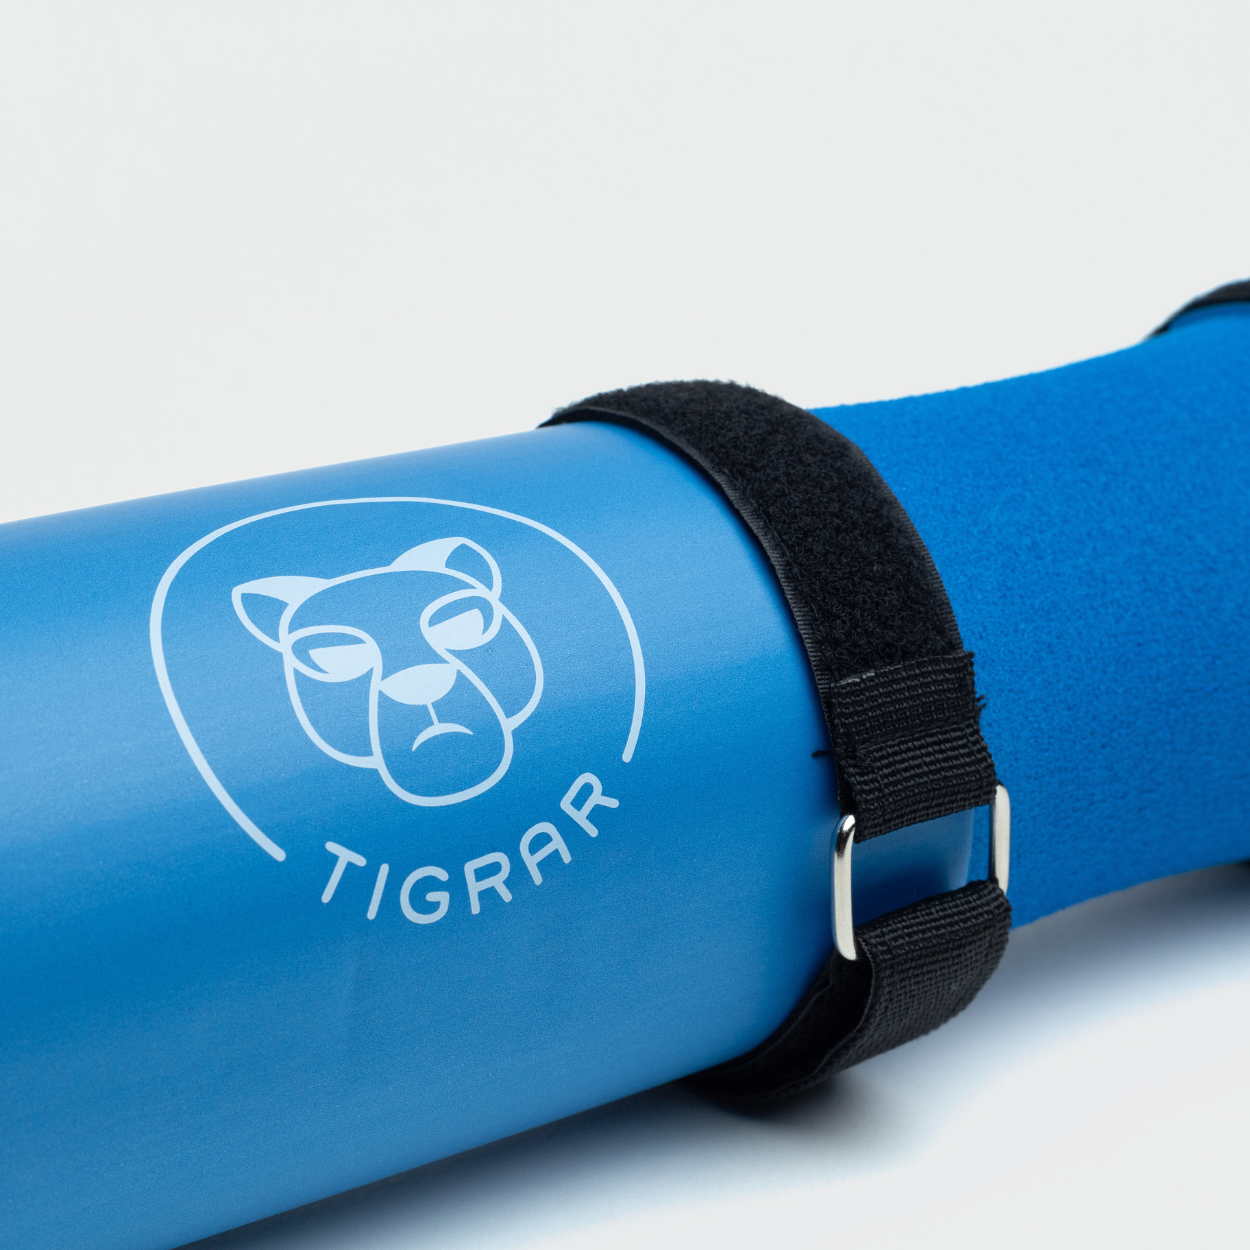 Blauw Tigrar barbell gym pad detail, essentieel voor veilig en effectief trainen.